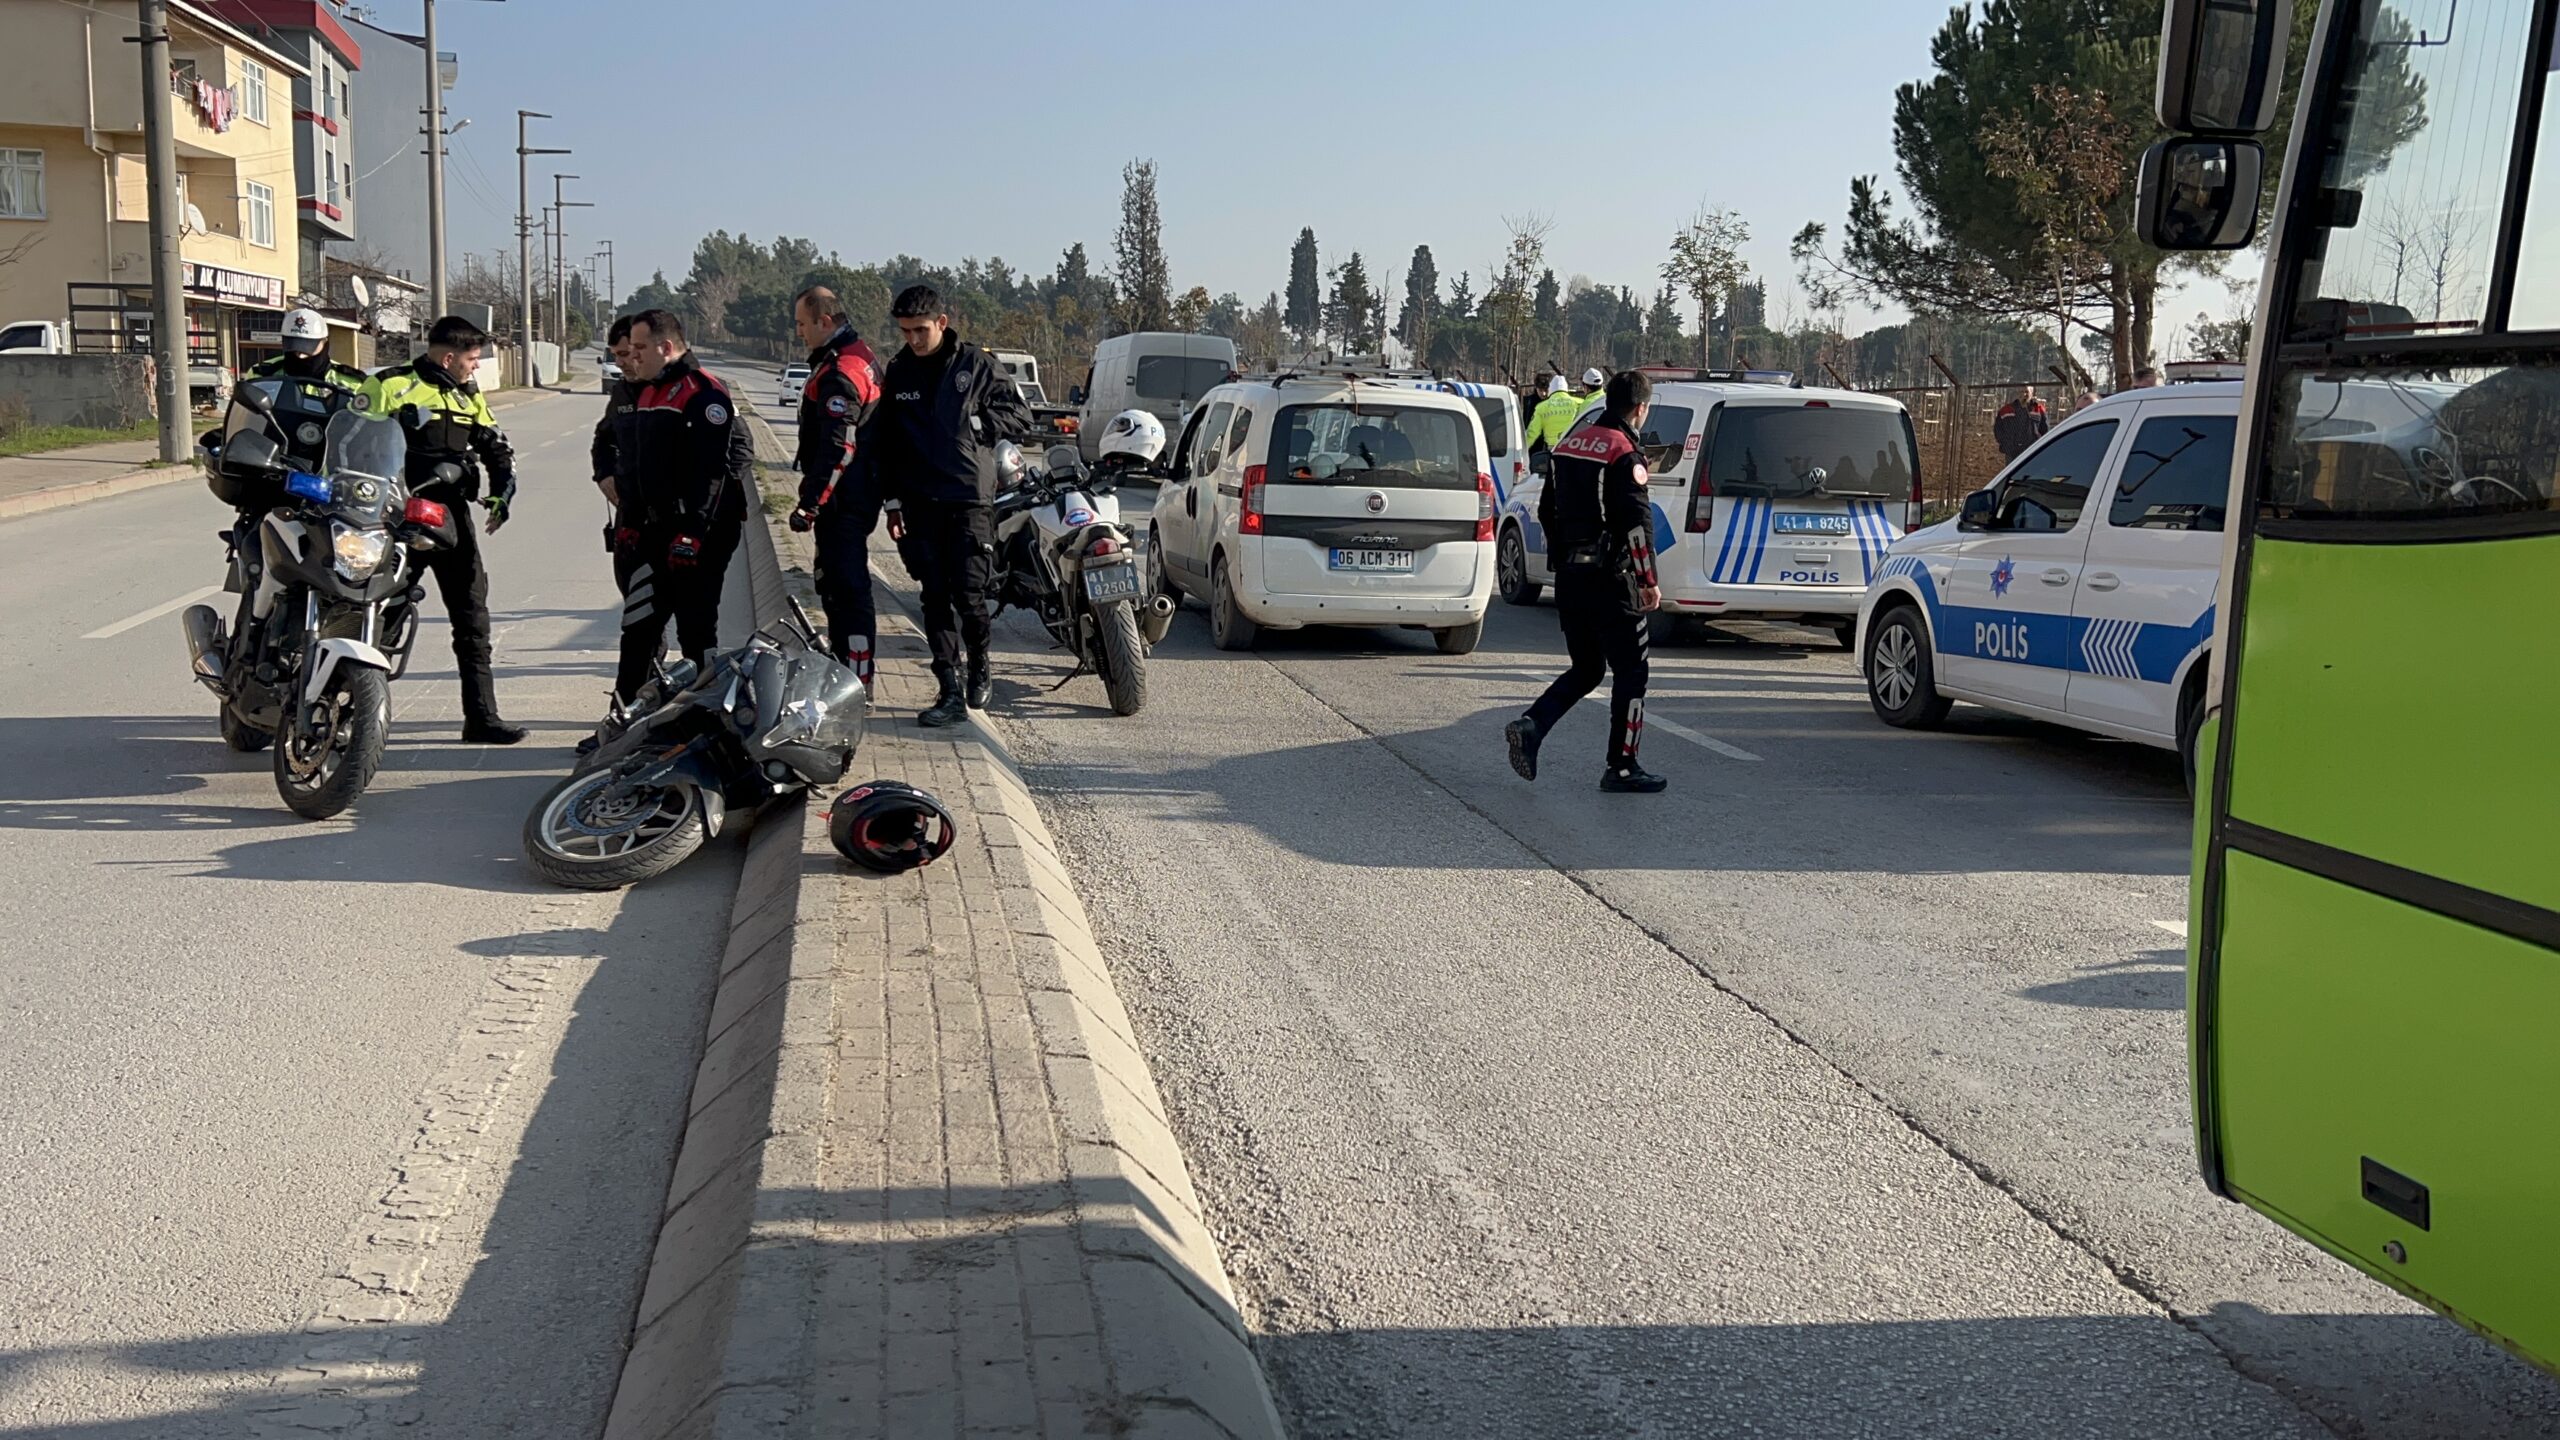 Kocaeli’nin Gebze ilçesinde polisin “dur” ihtarına uymayan motosiklet sürücüsü, kovalamaca sırasında kaza yapınca yakalandı.